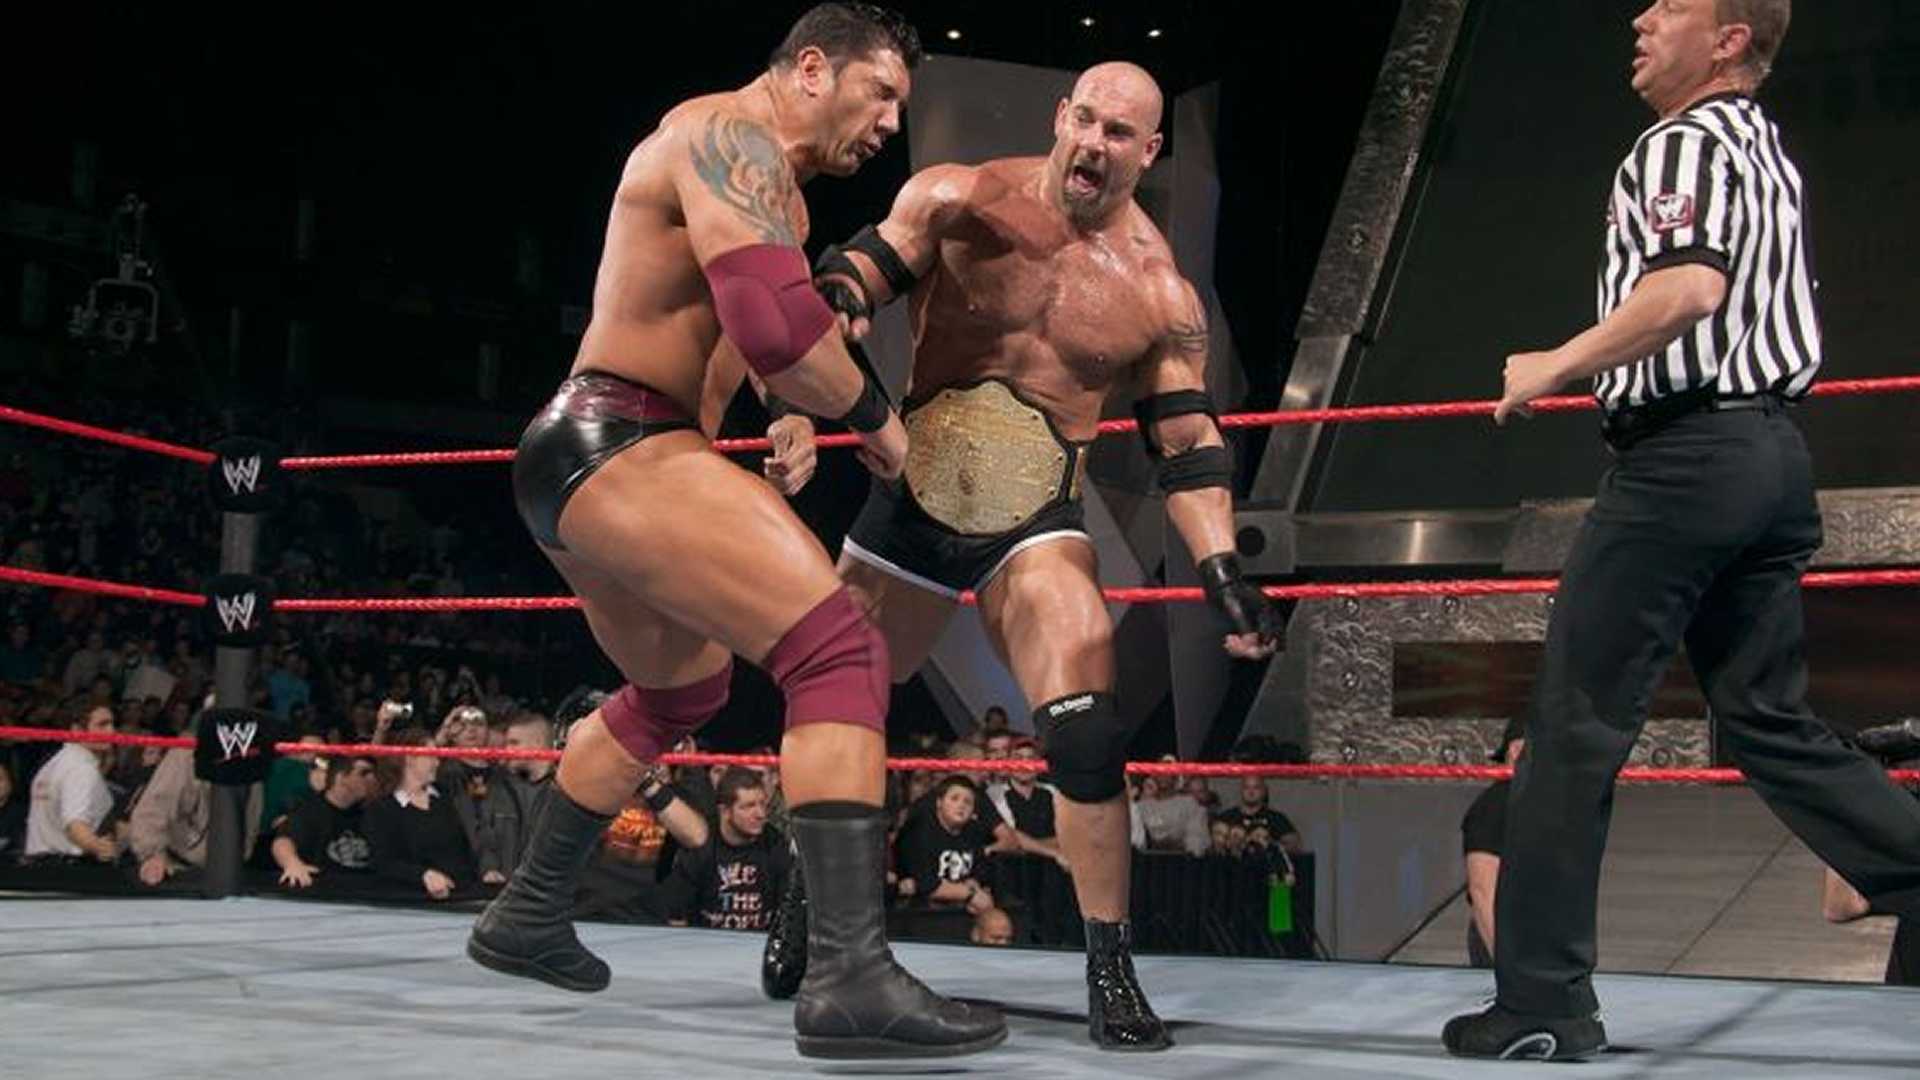 REGARDER: La légende de la WWE Goldberg détruit Batista dans un match extrêmement physique à Raw